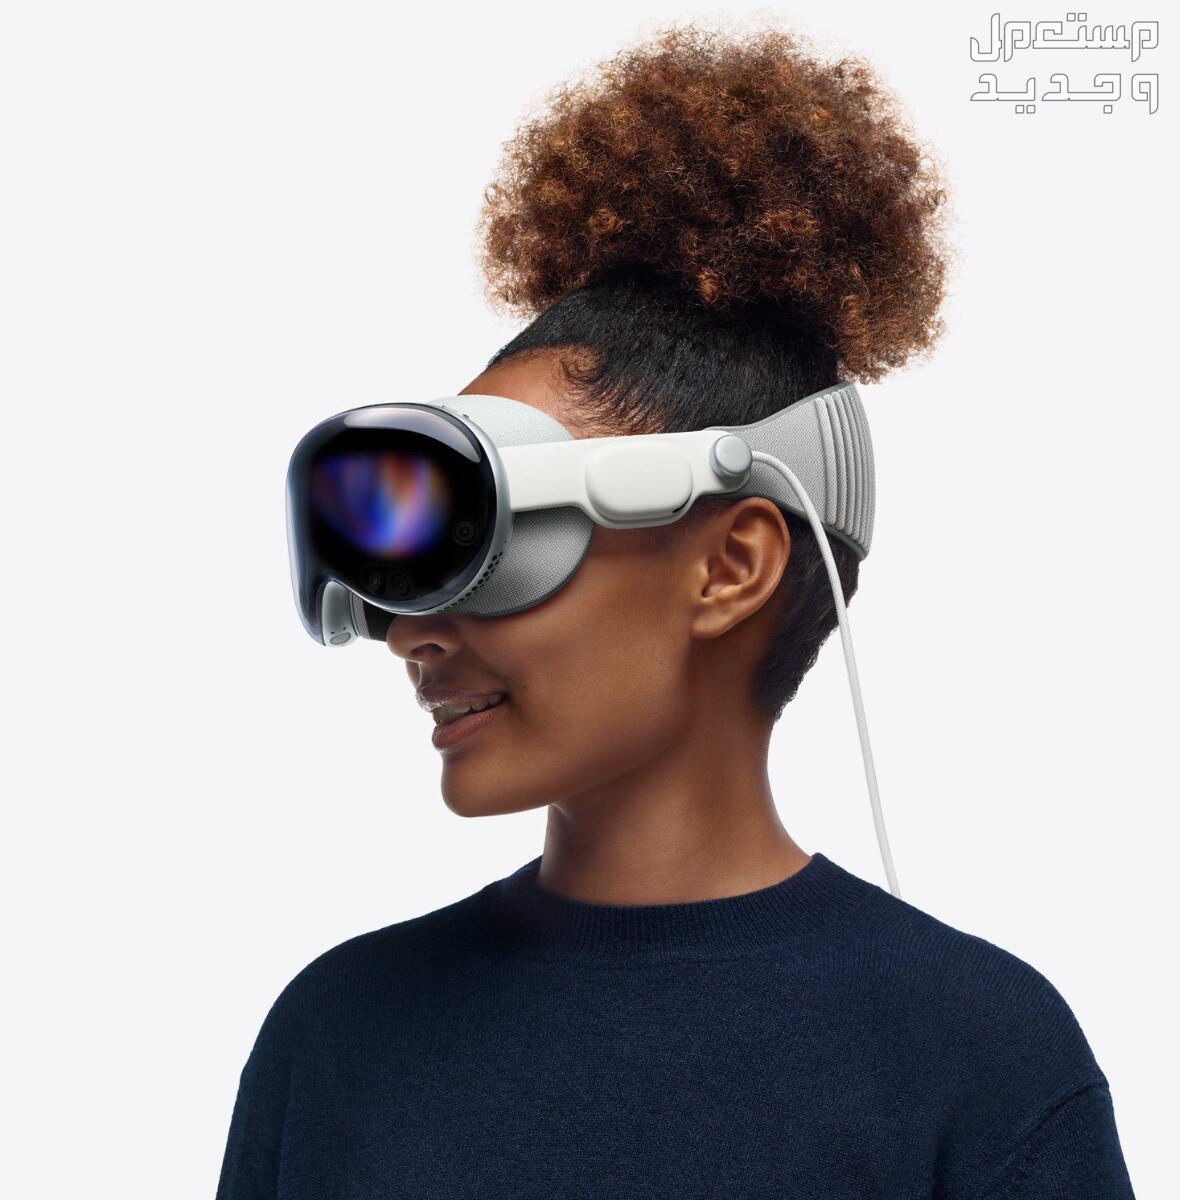 سعر نظارة أبل فيجن برو احصل عليها الآن Apple Vision Pro